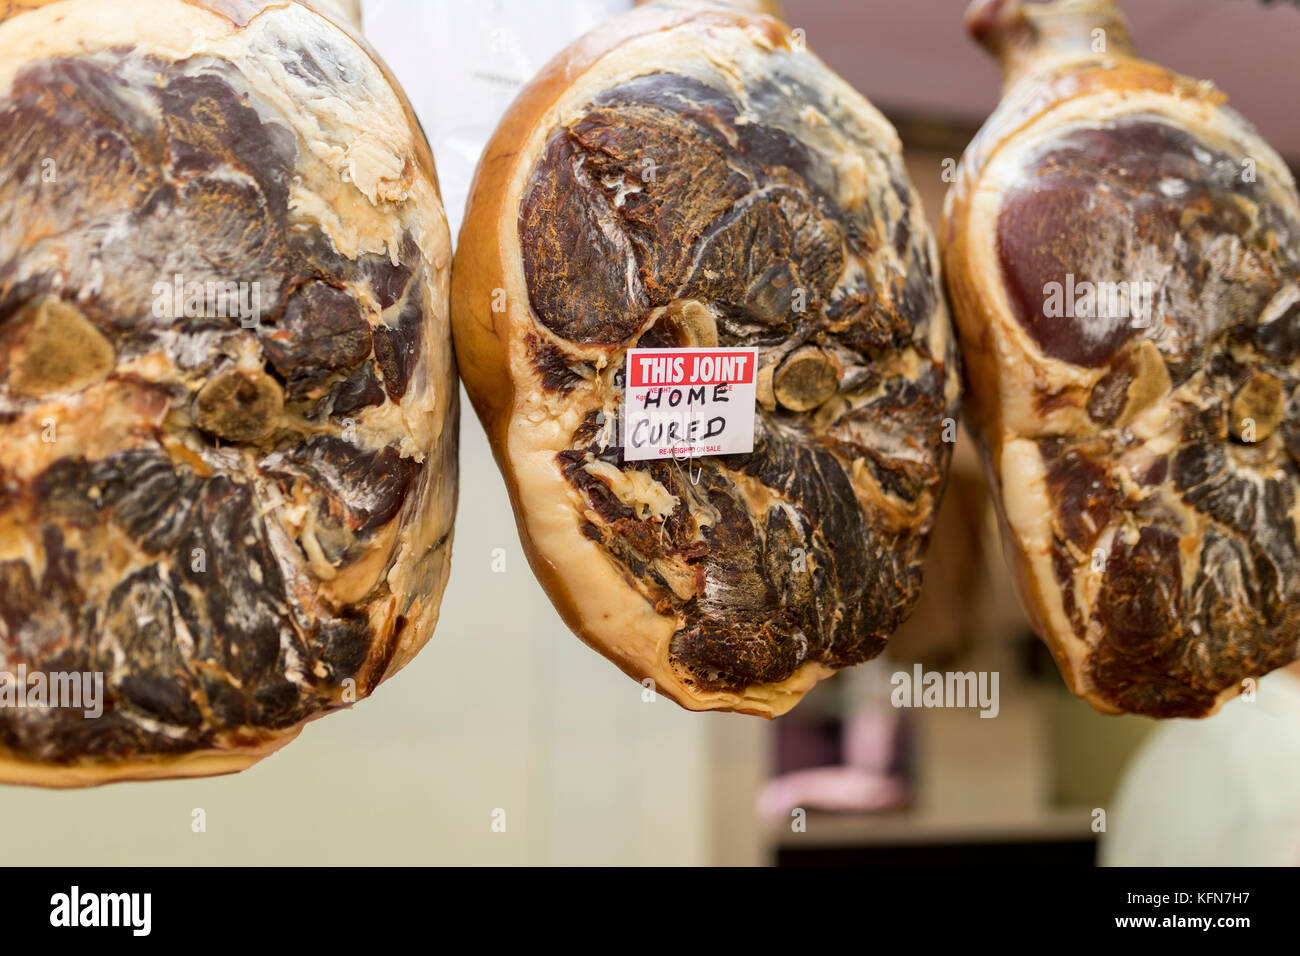 Scelta e home premium indurito giunti di maiale appeso in un negozio di macellaio su un mercato in stallo in Inghilterra, Regno Unito Foto Stock